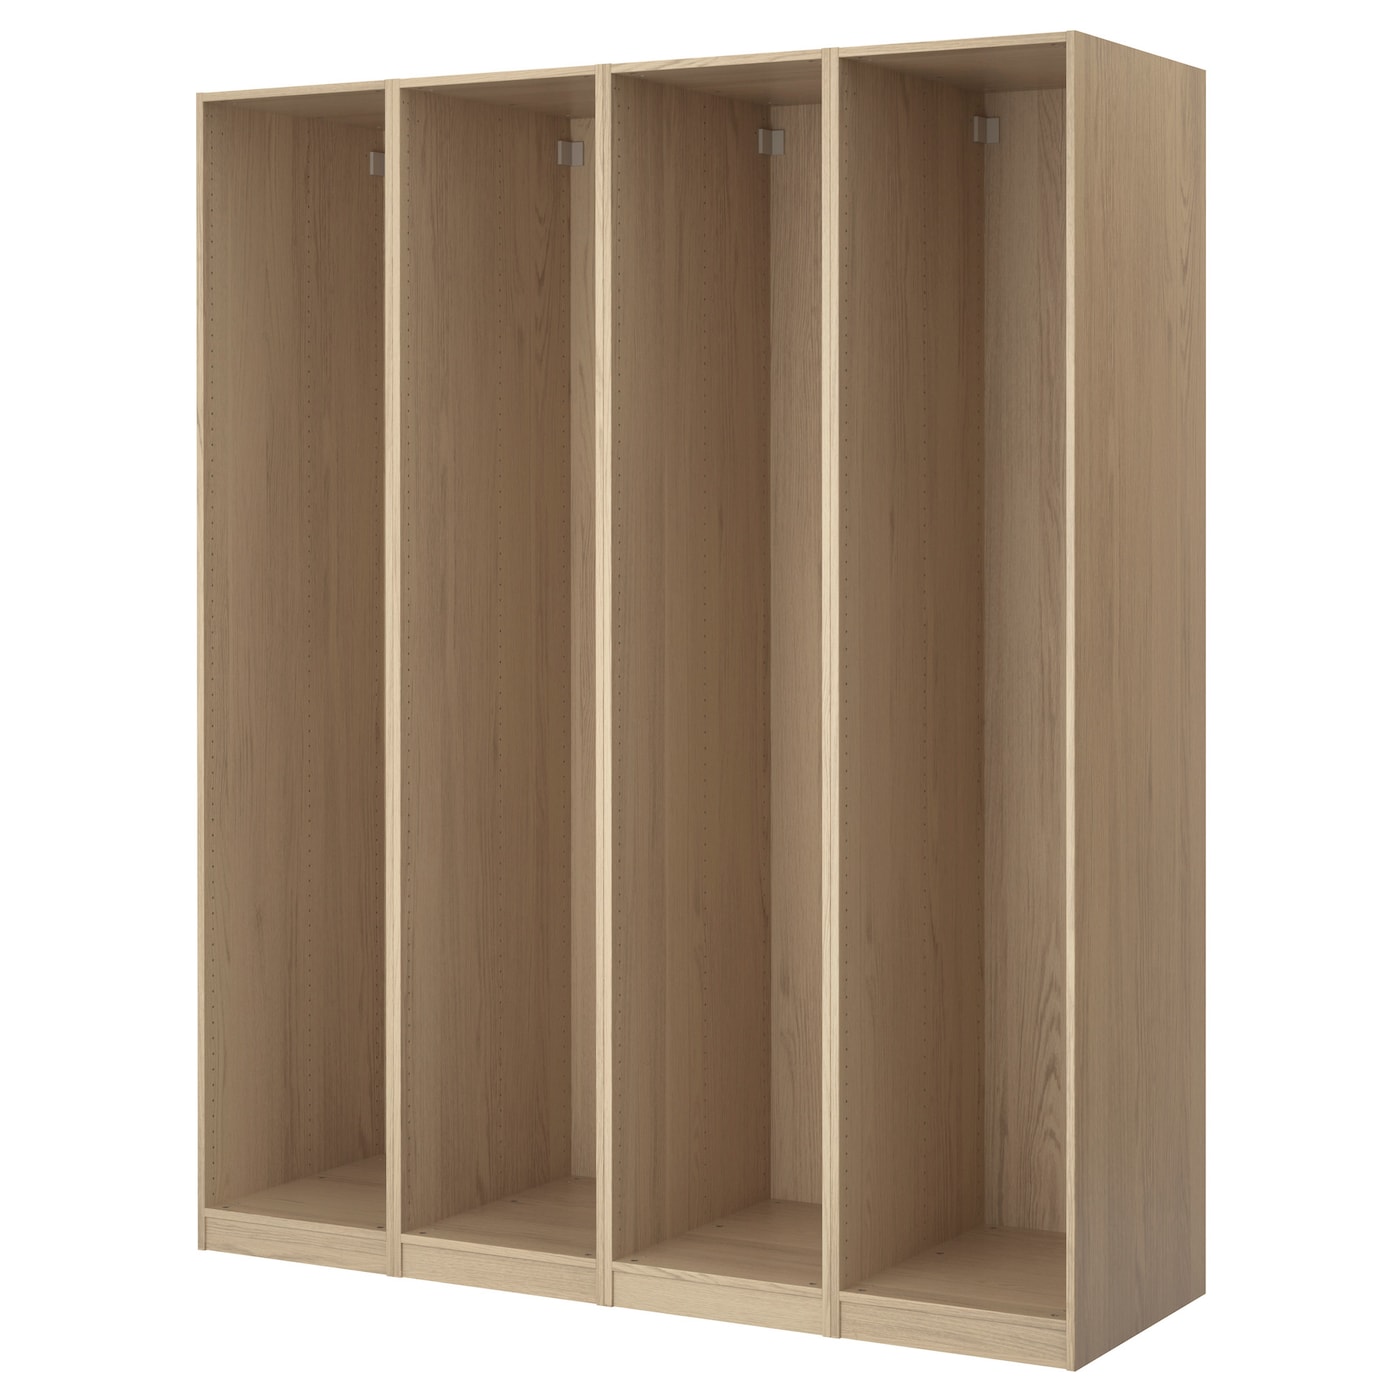 4 каркаса гардероба - PAX IKEA/ ПАКС ИКЕА, 200x58x201  см, коричневый